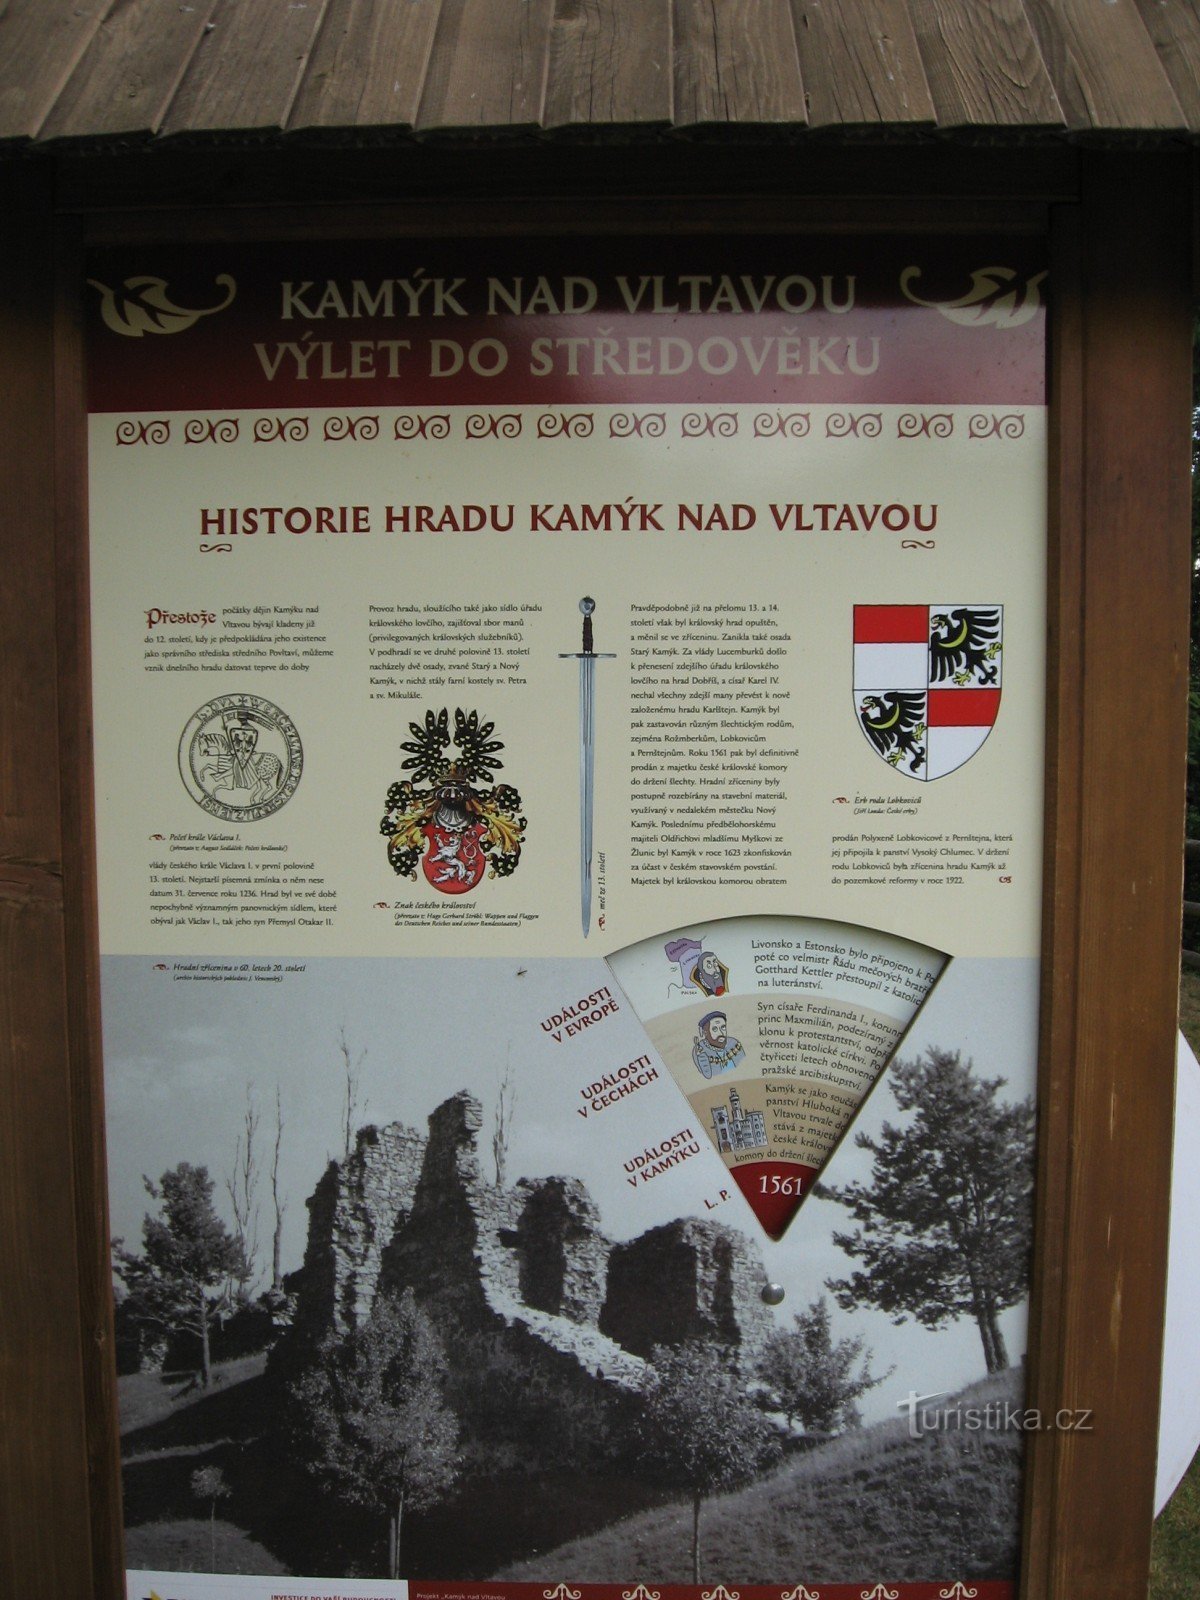 інформаційна панель на території руїн Камик над Влтавою